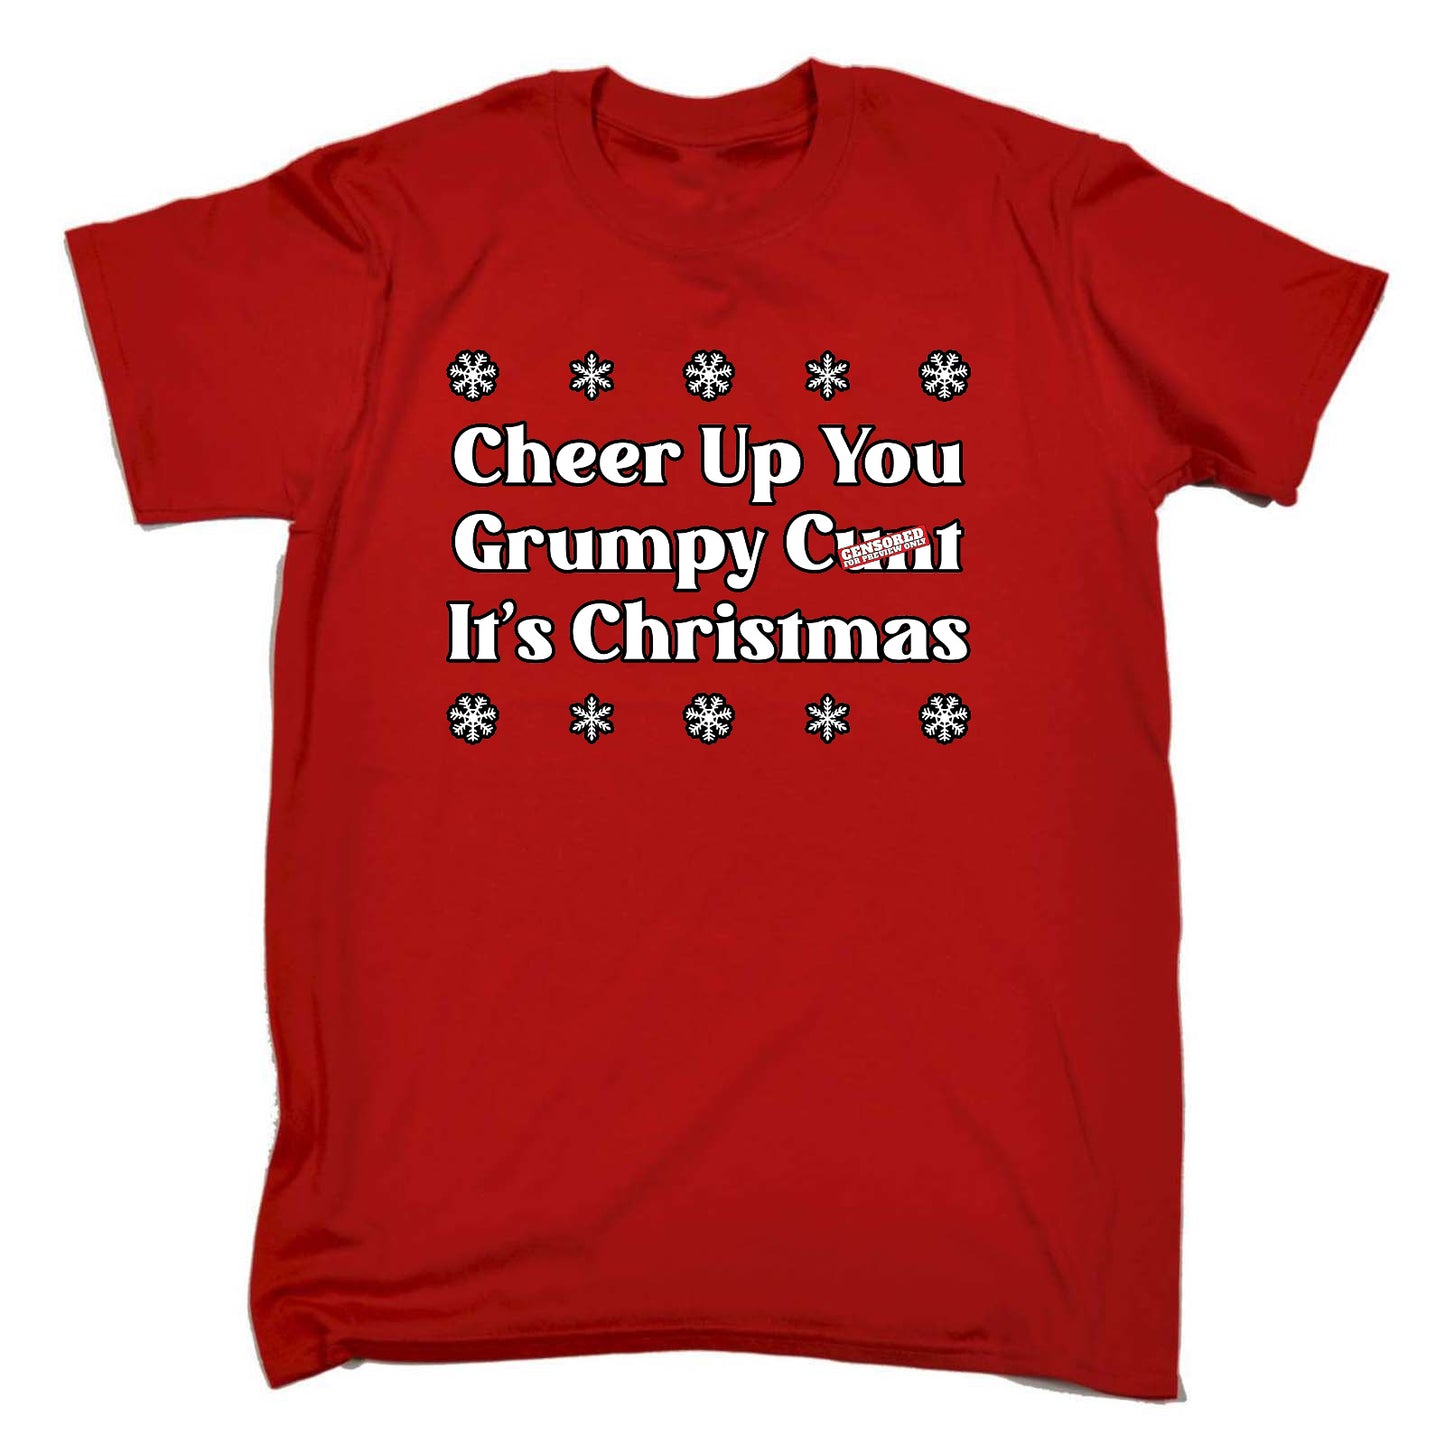 Cheer Up Grumpy Its Christmas - Mens Funny T-Shirt Tshirts